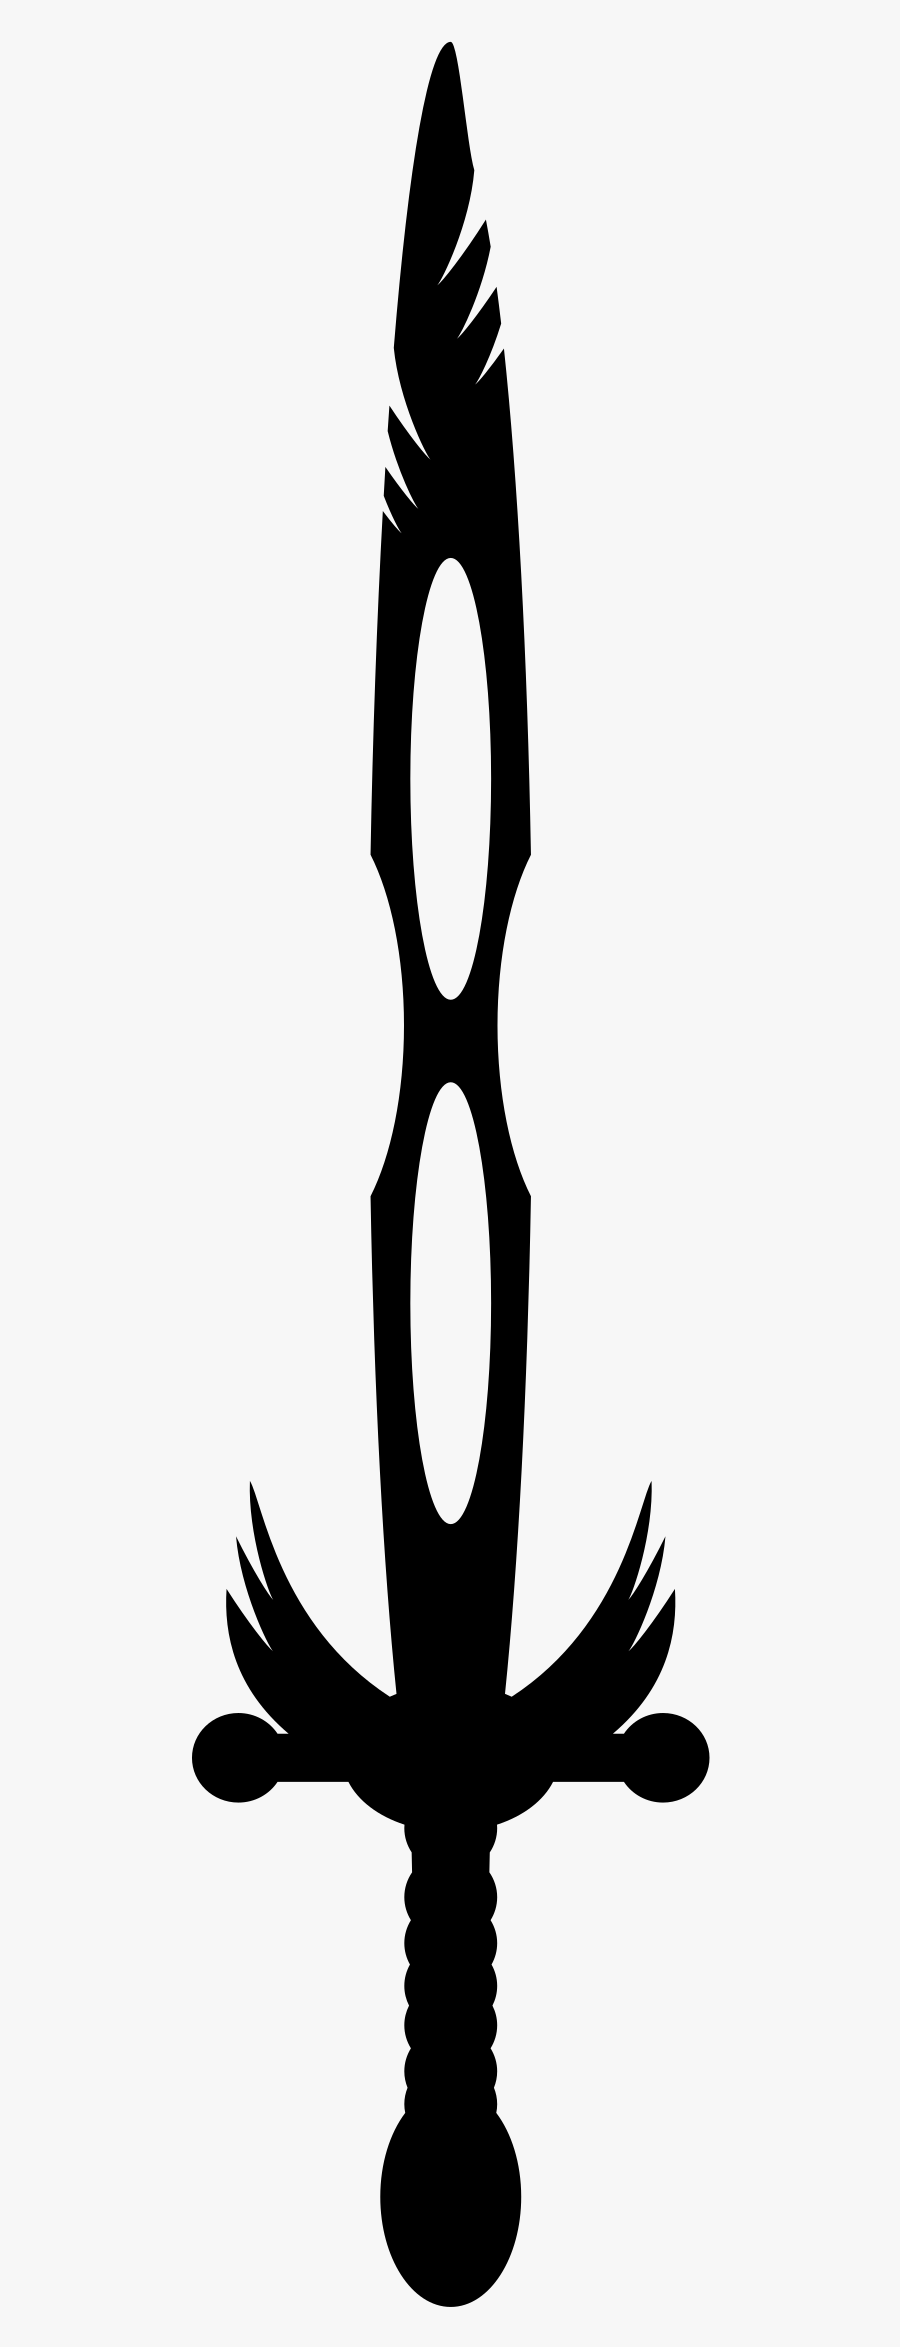 Black Sword Png Hd Png Mart - Sword Png Hd Logo, Transparent Clipart